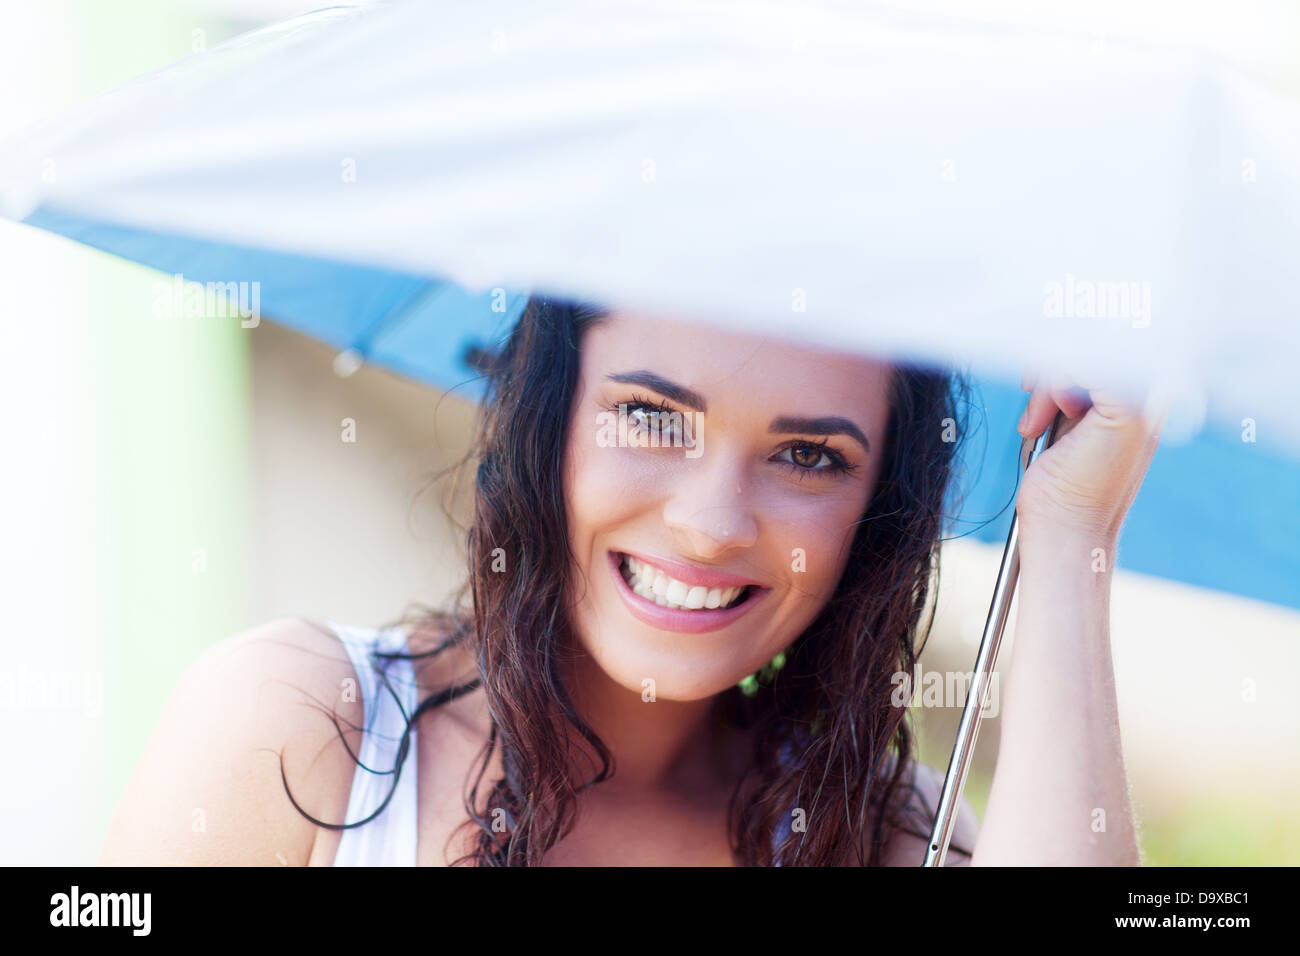 pretty young woman under umbrella in the rain Stock Photo